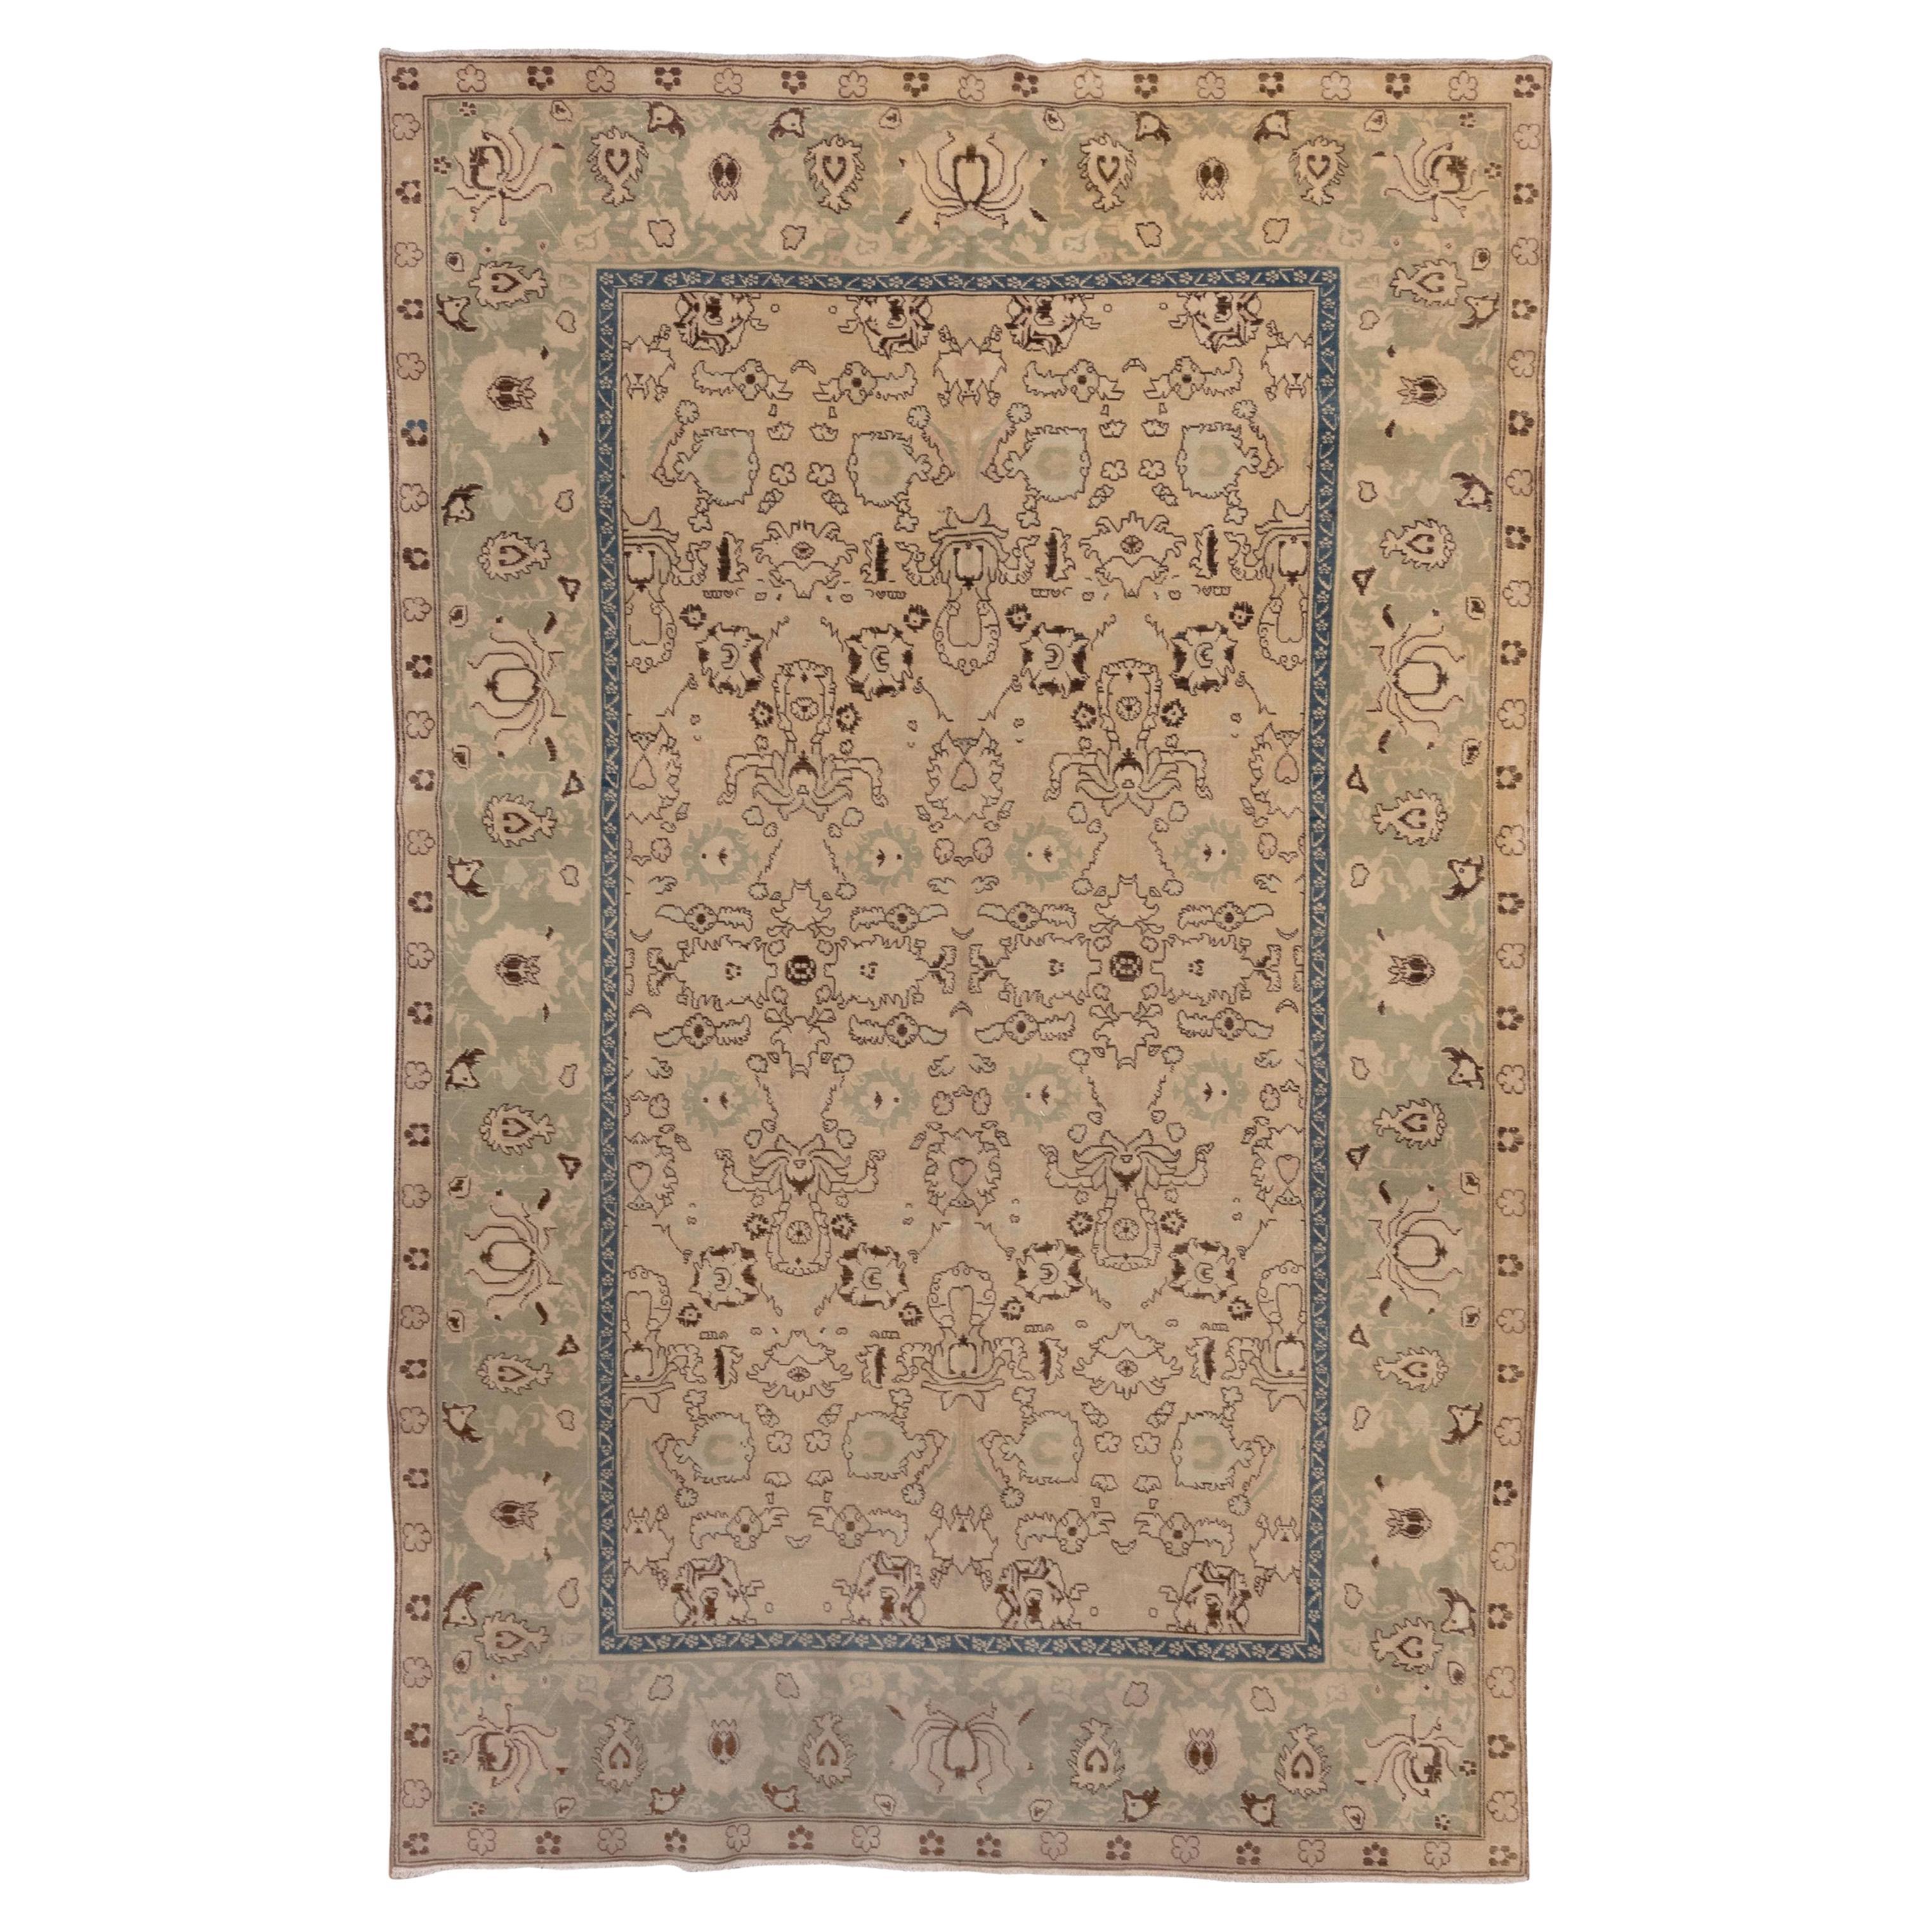 Petit tapis indien ancien Agra, vers les années 1920, palette de couleurs douces